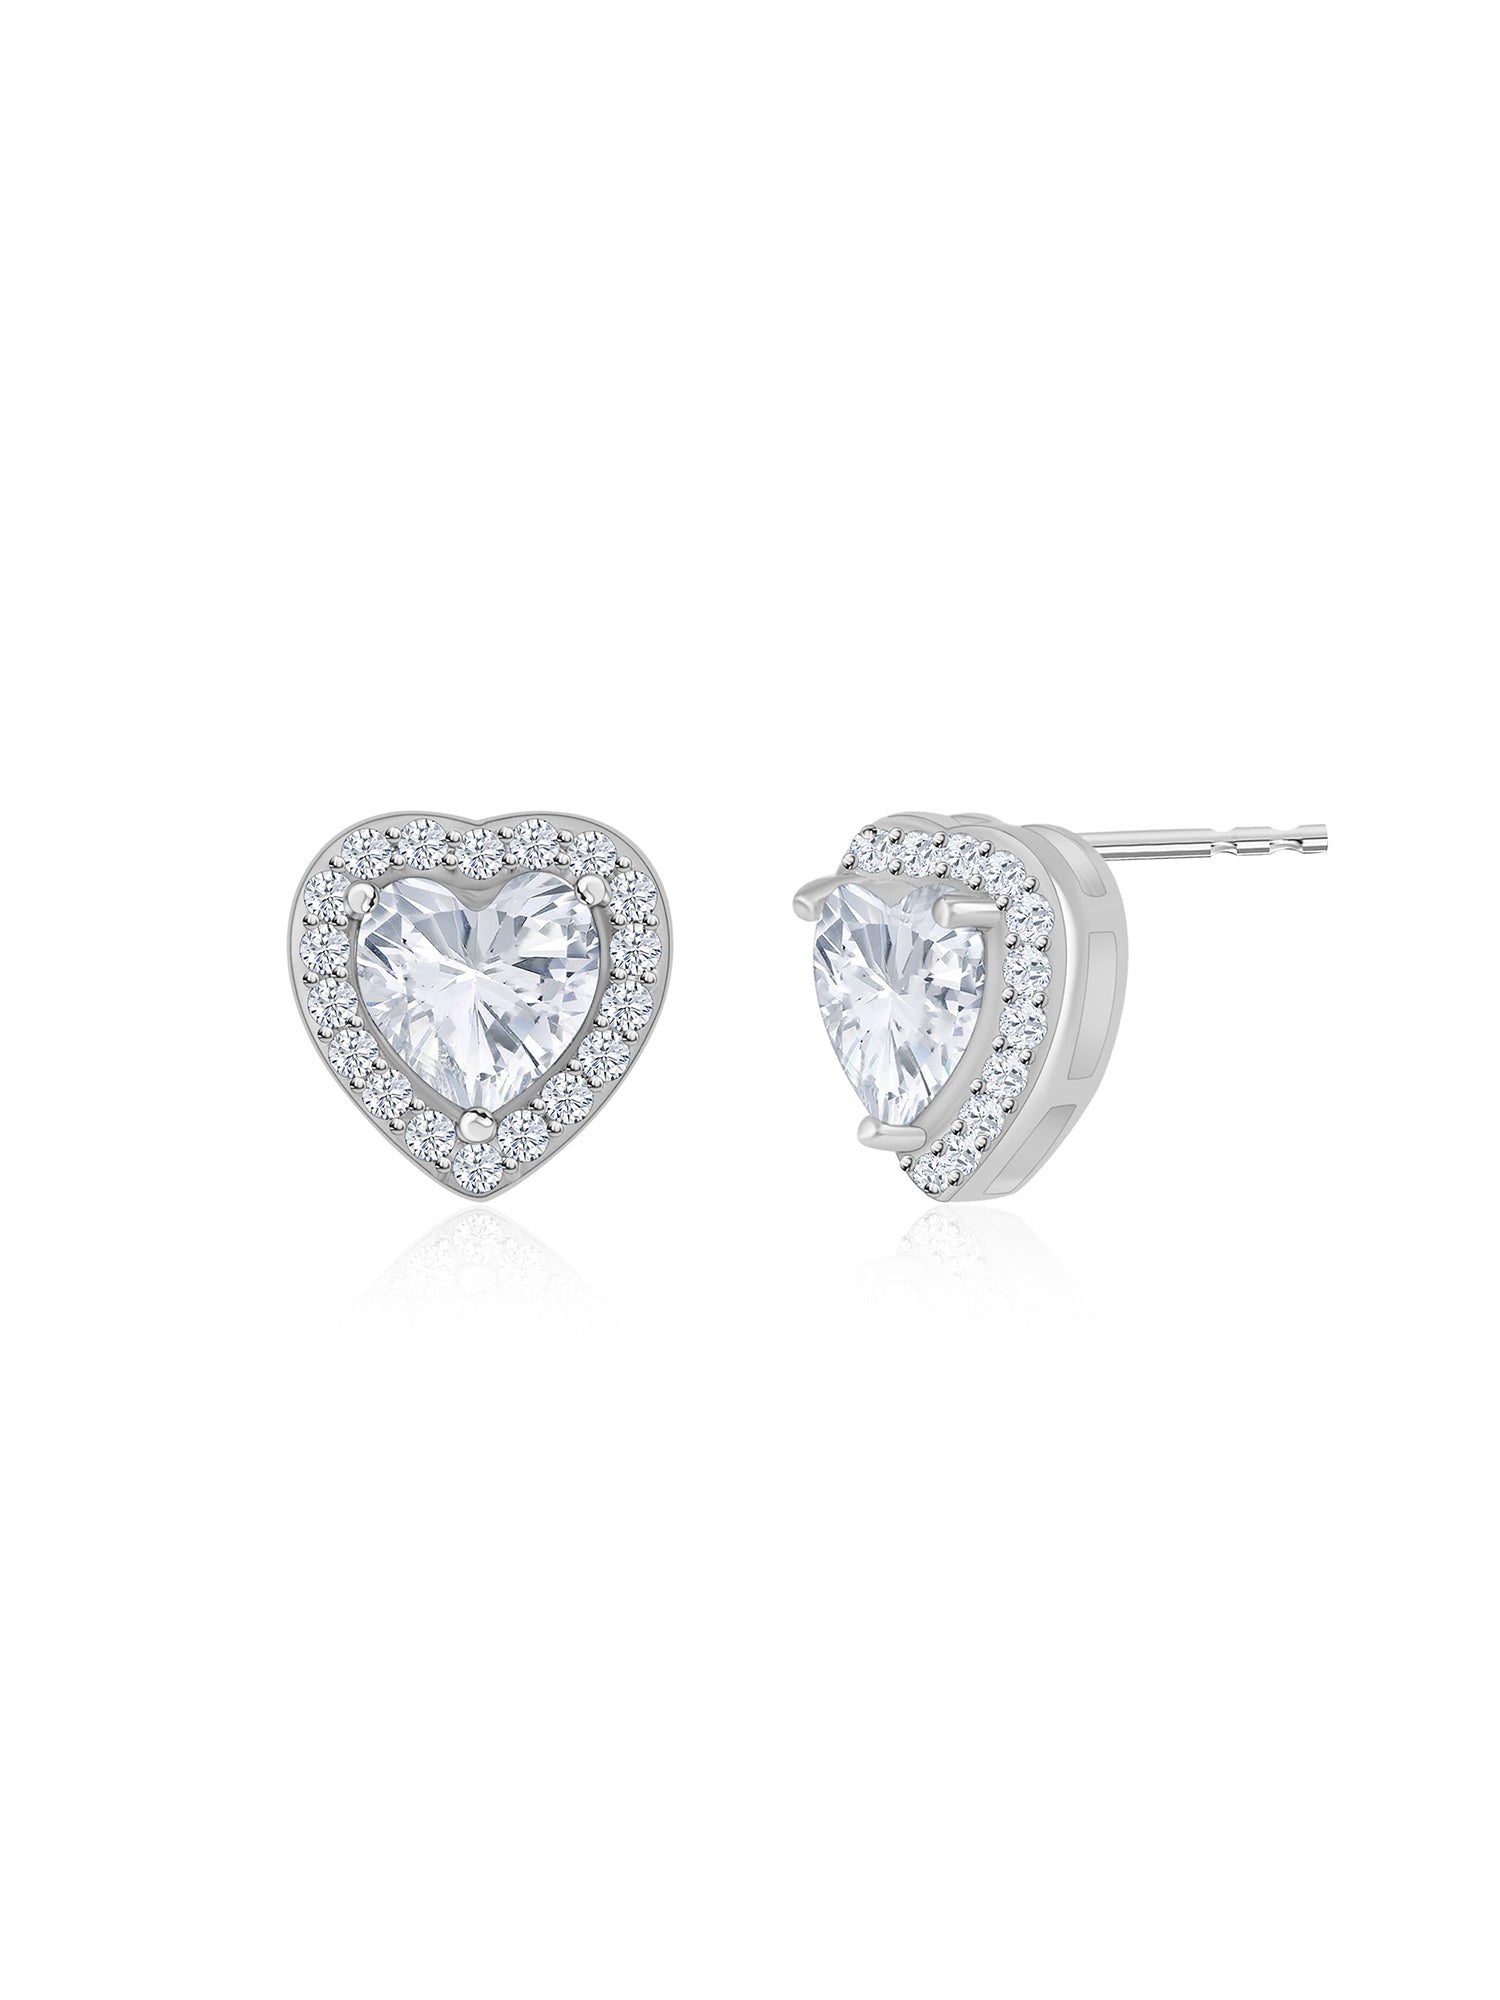 925 Silver American Diamond Earrings Heart Shaped Stud Earrings